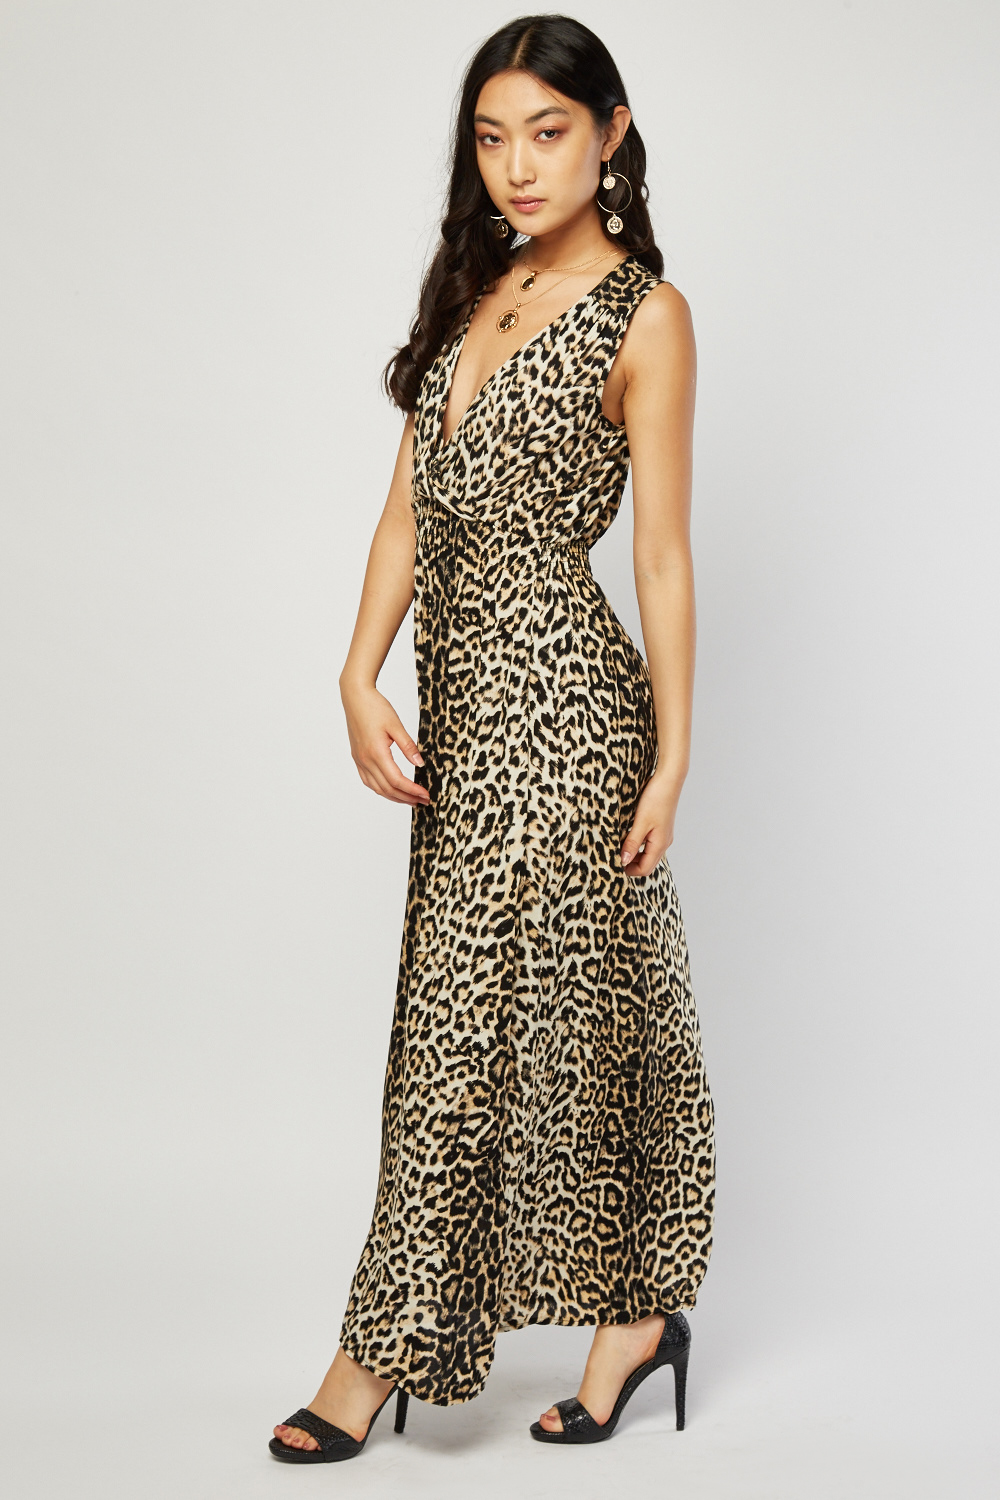 Leopard Print Maxi Dress - Just $7